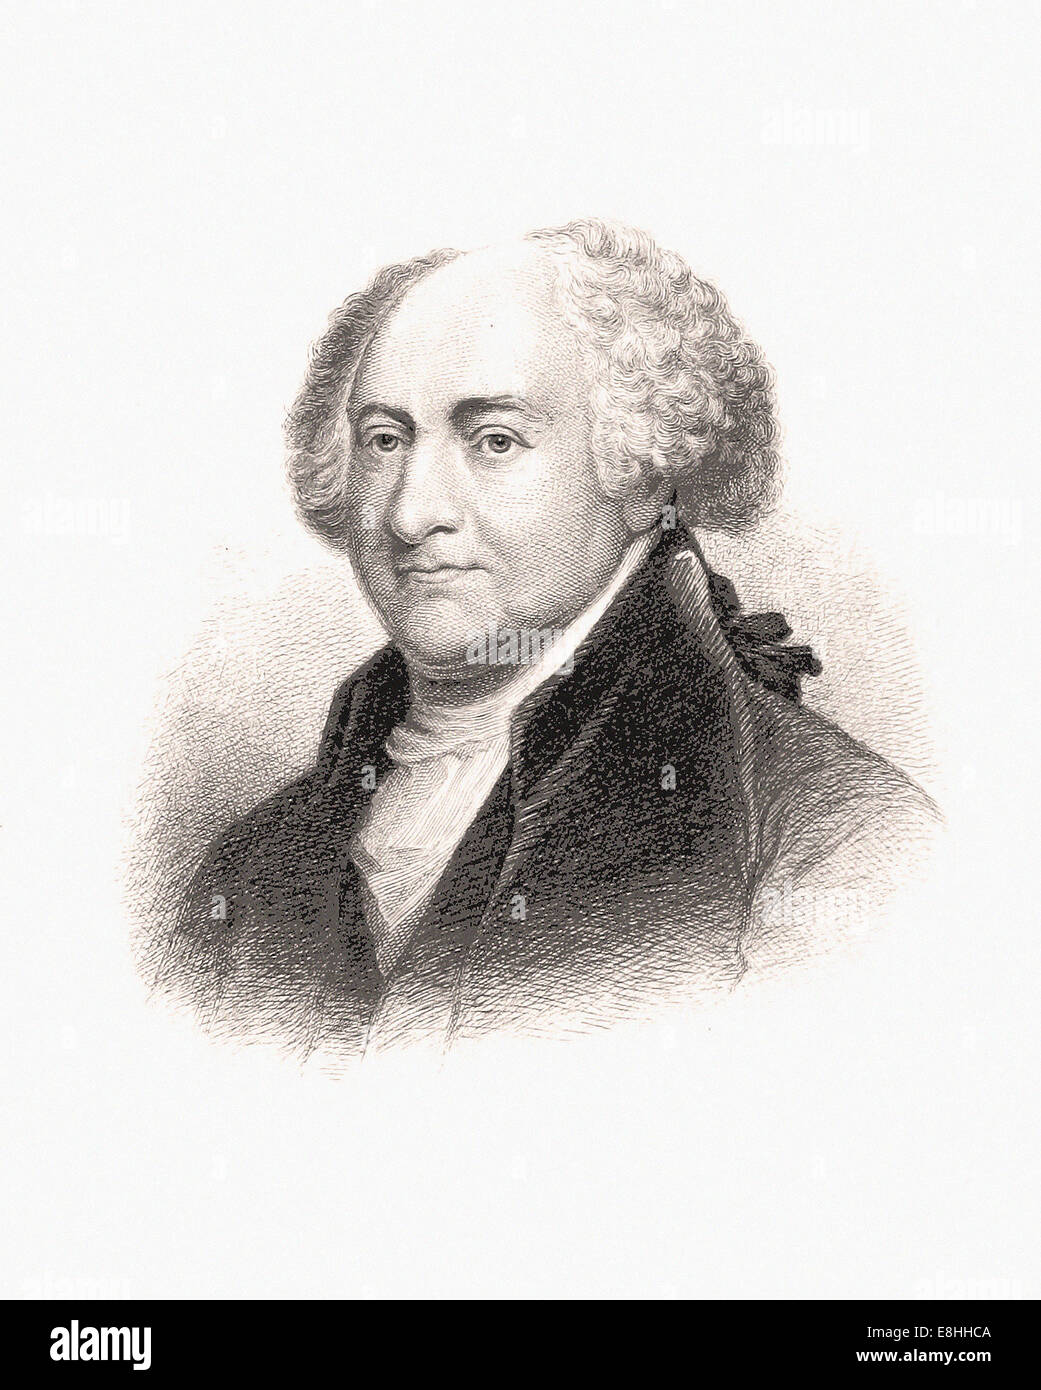 Portrait de John Adams - Gravure - XIX ème siècle Banque D'Images